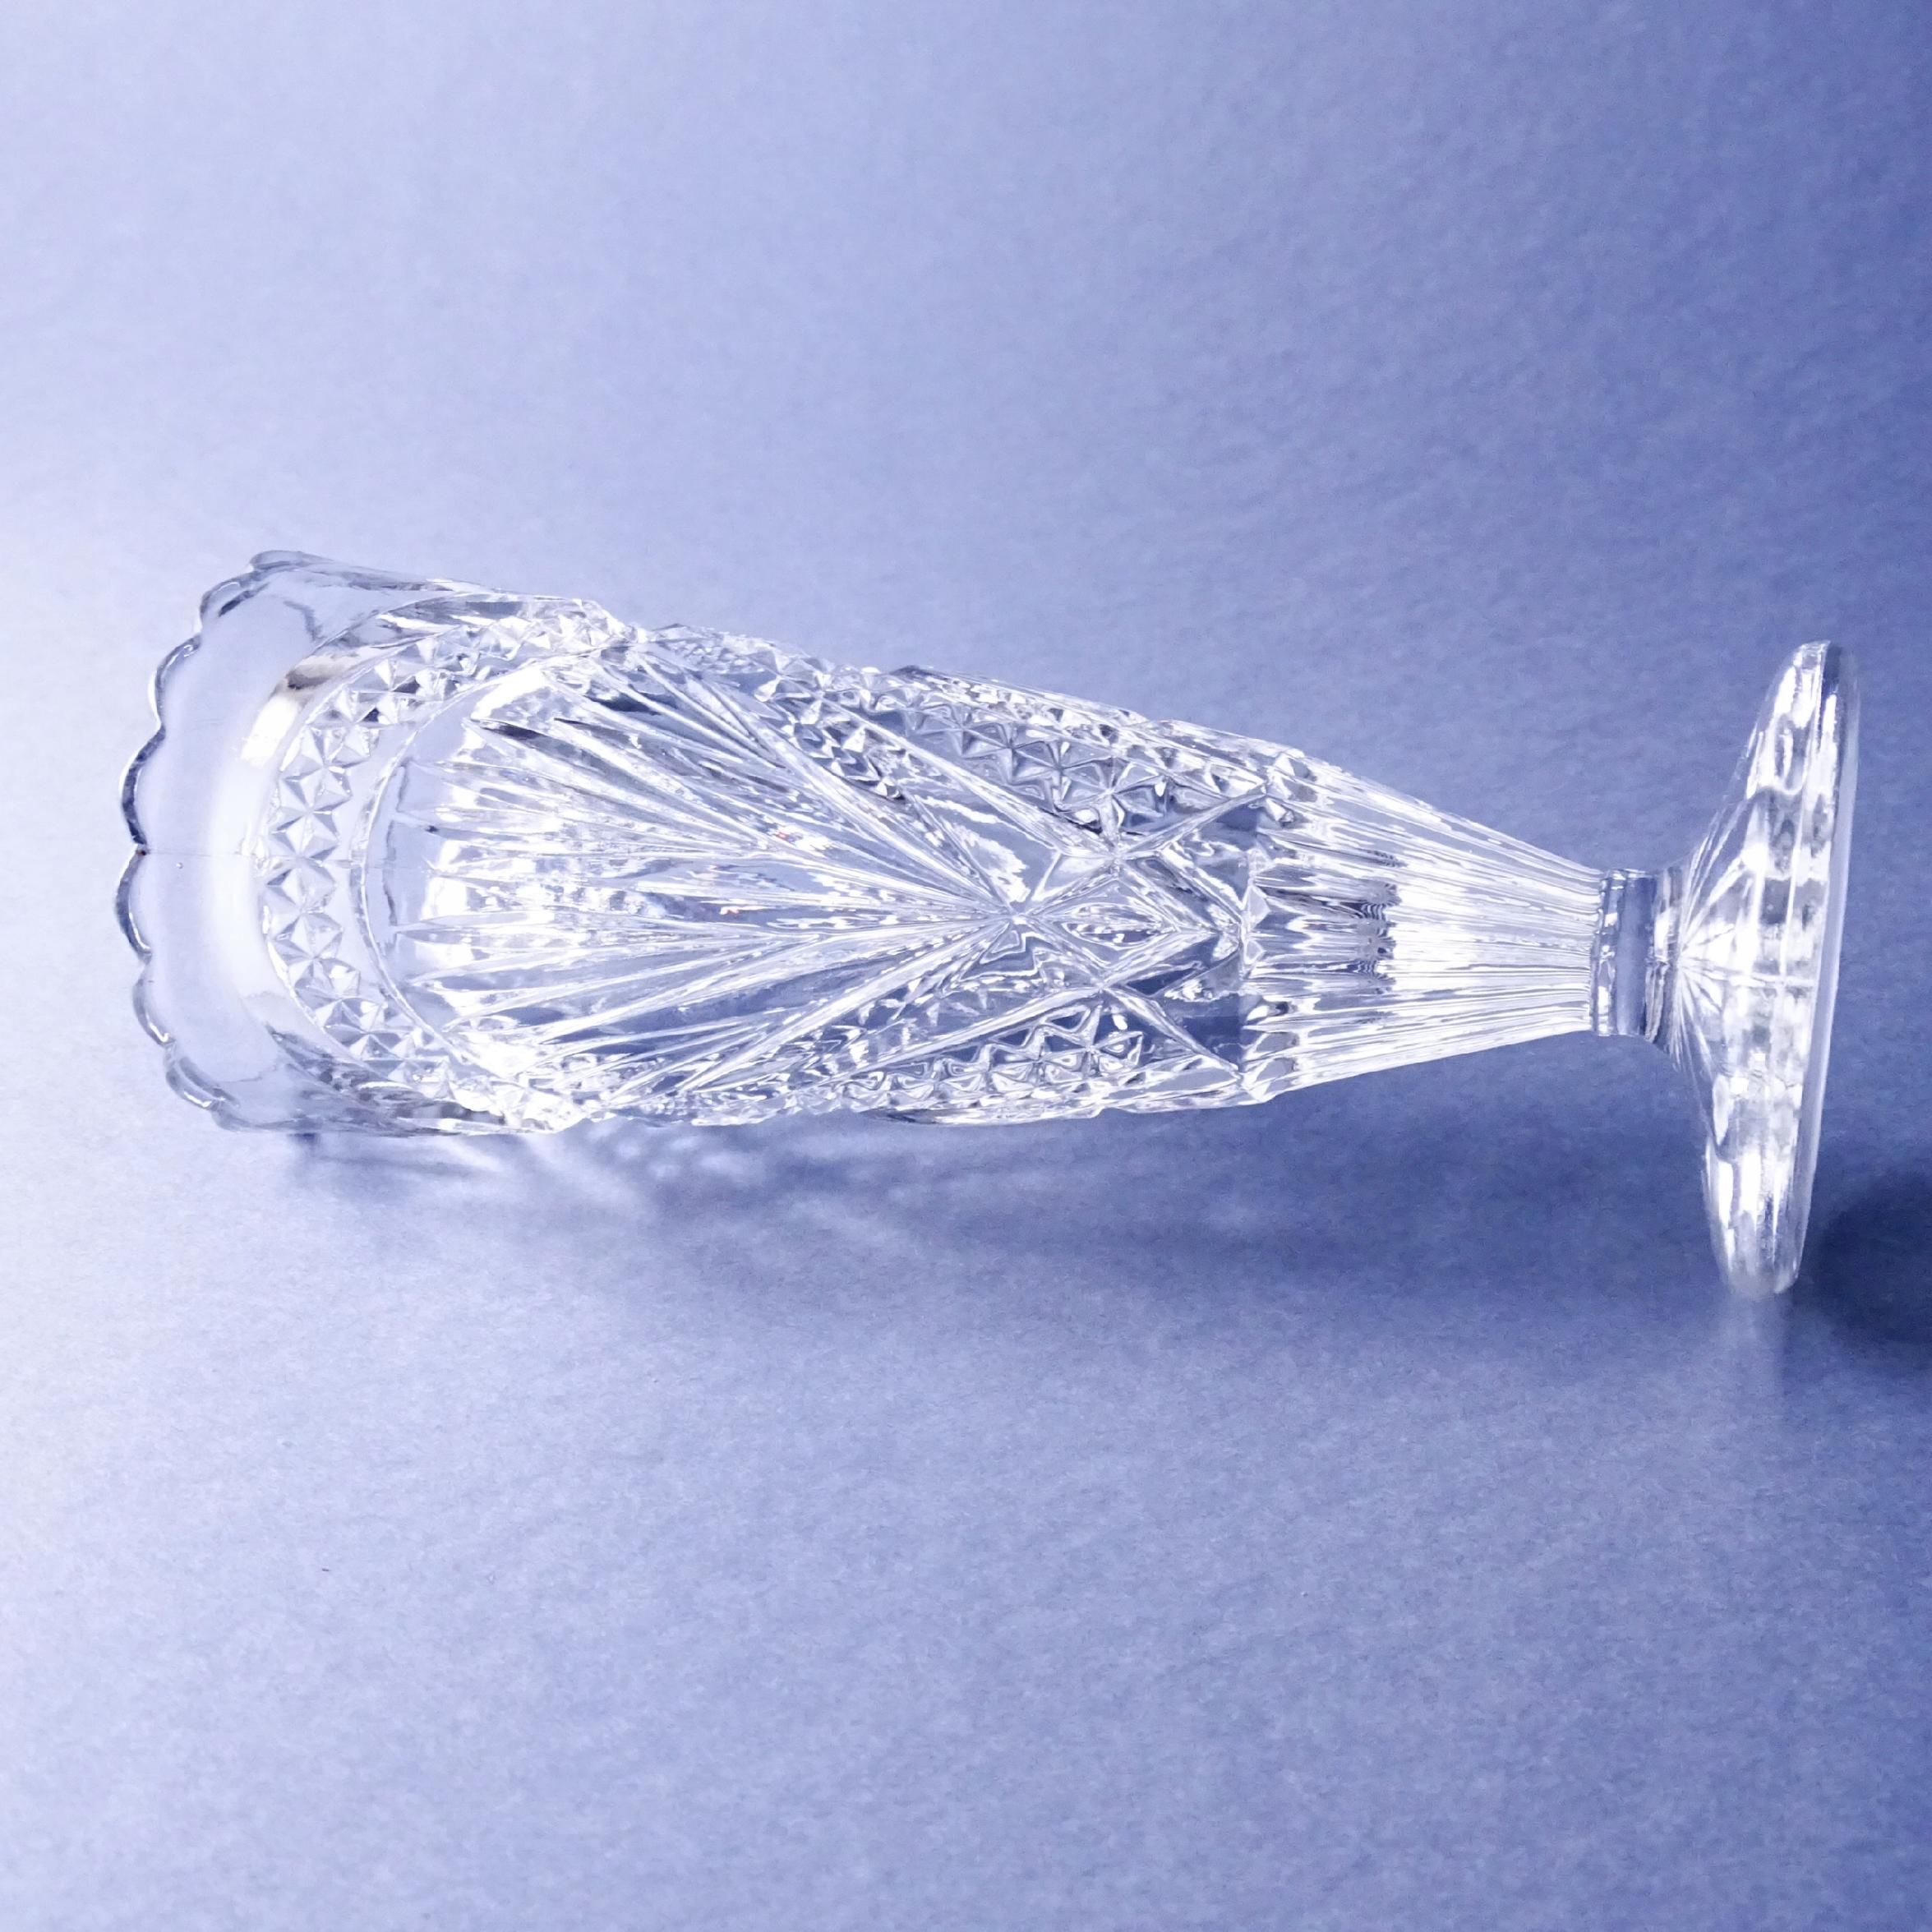 zabytkowy wazon szklany watler frederika lata 20/30-te